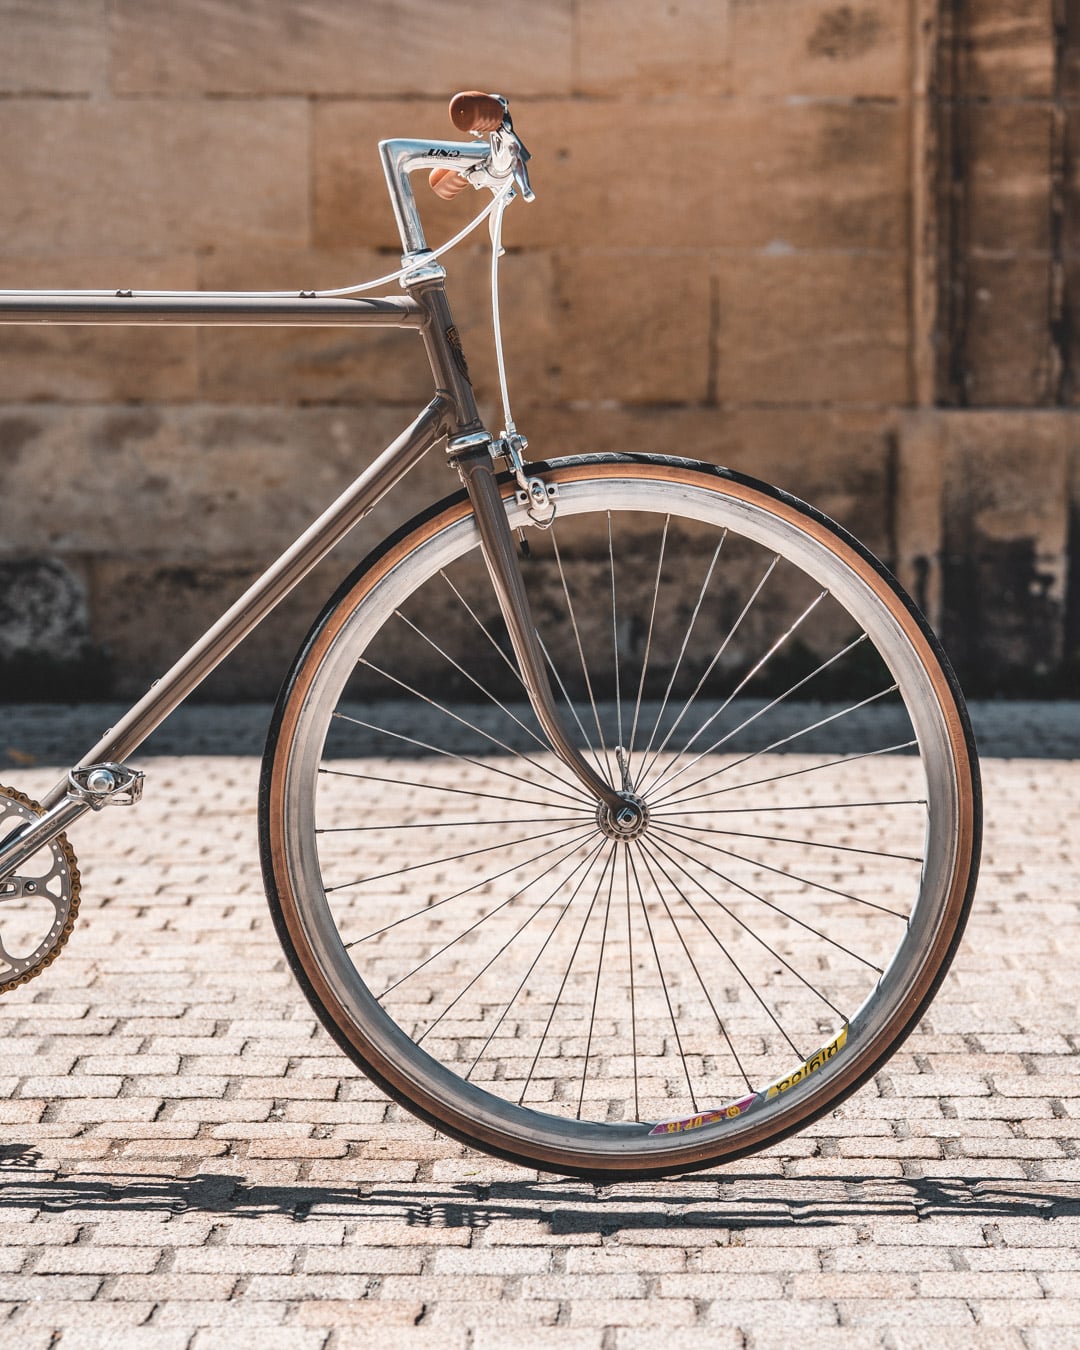 Comment remplacer un rayon de vélo?